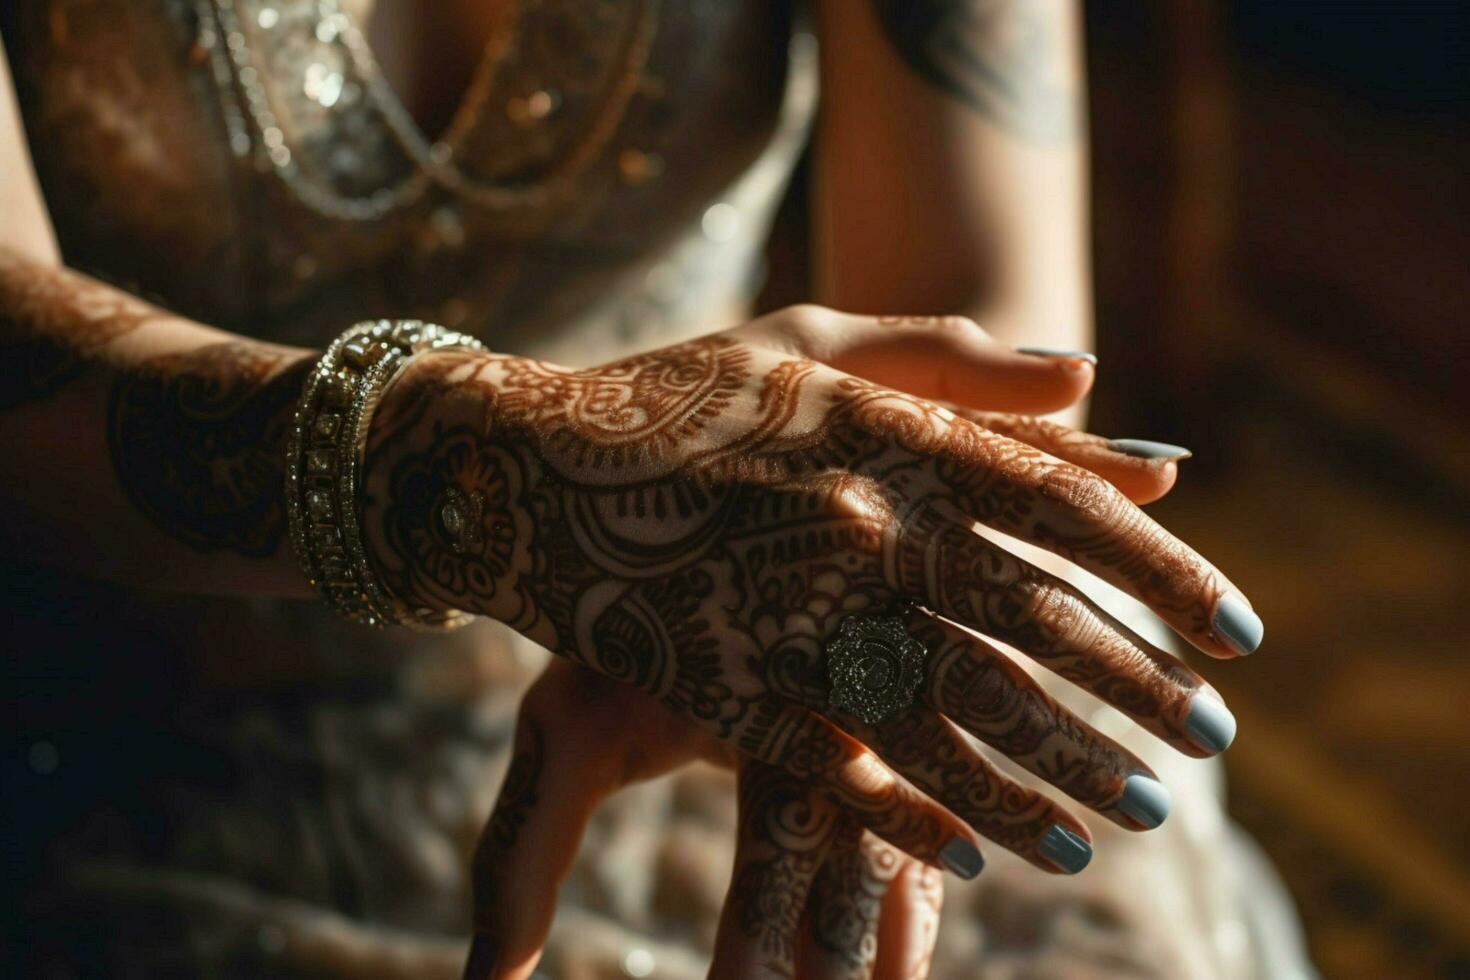 elegant bruid henna- sieren hand- en schoonheid foto